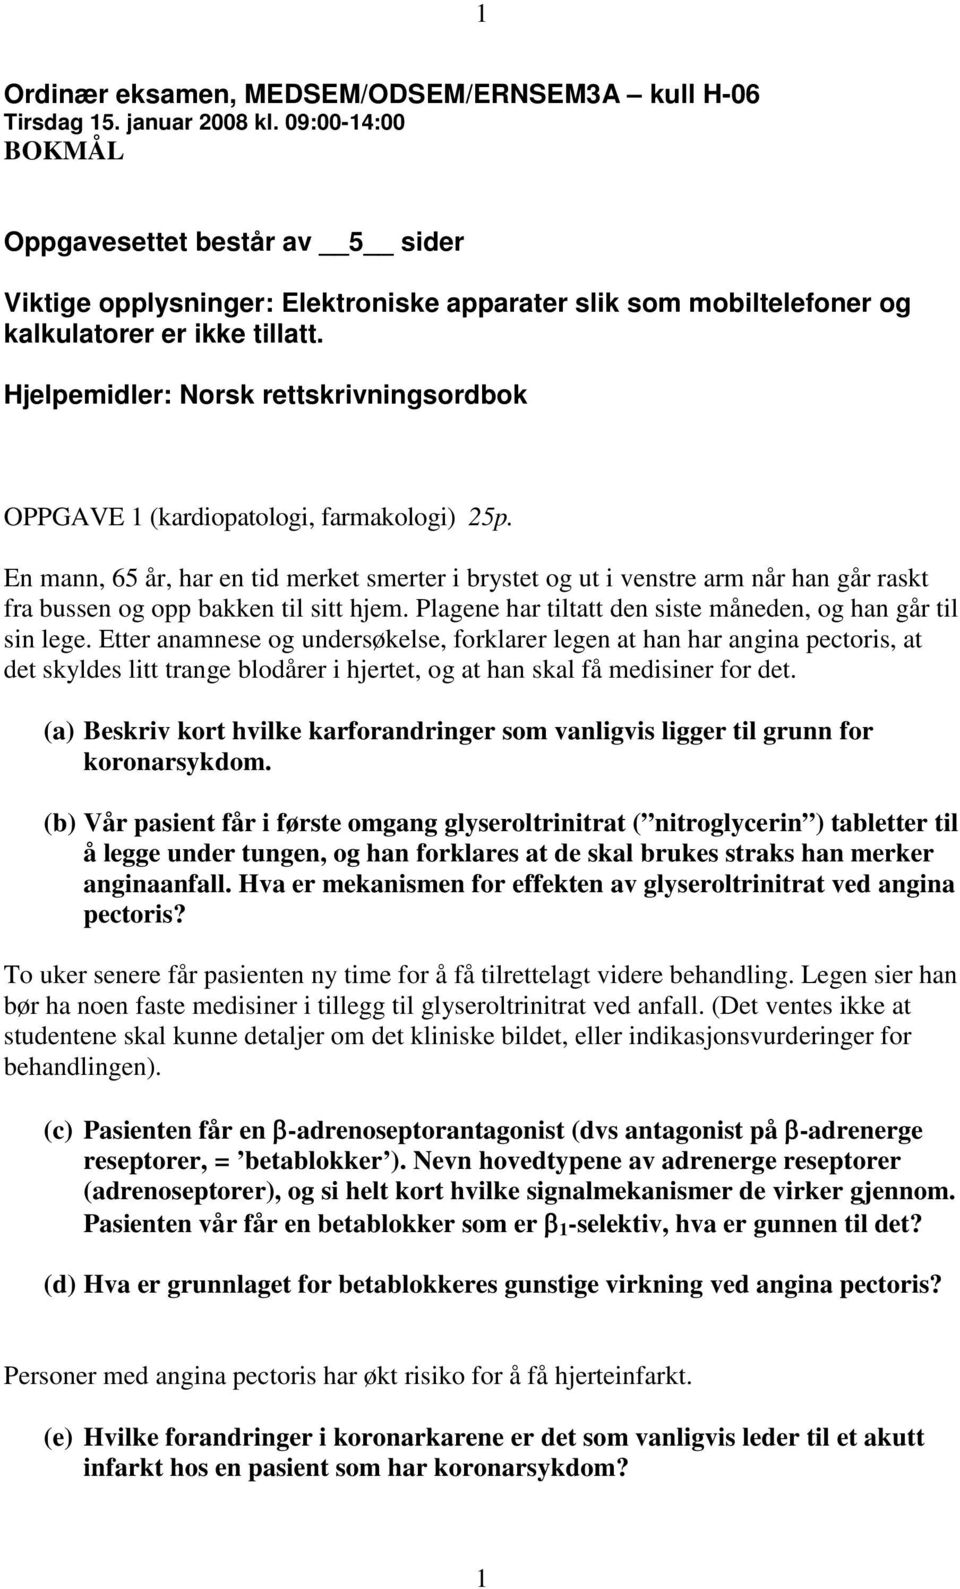 Hjelpemidler: Norsk rettskrivningsordbok OPPGAVE 1 (kardiopatologi, farmakologi) 25p.